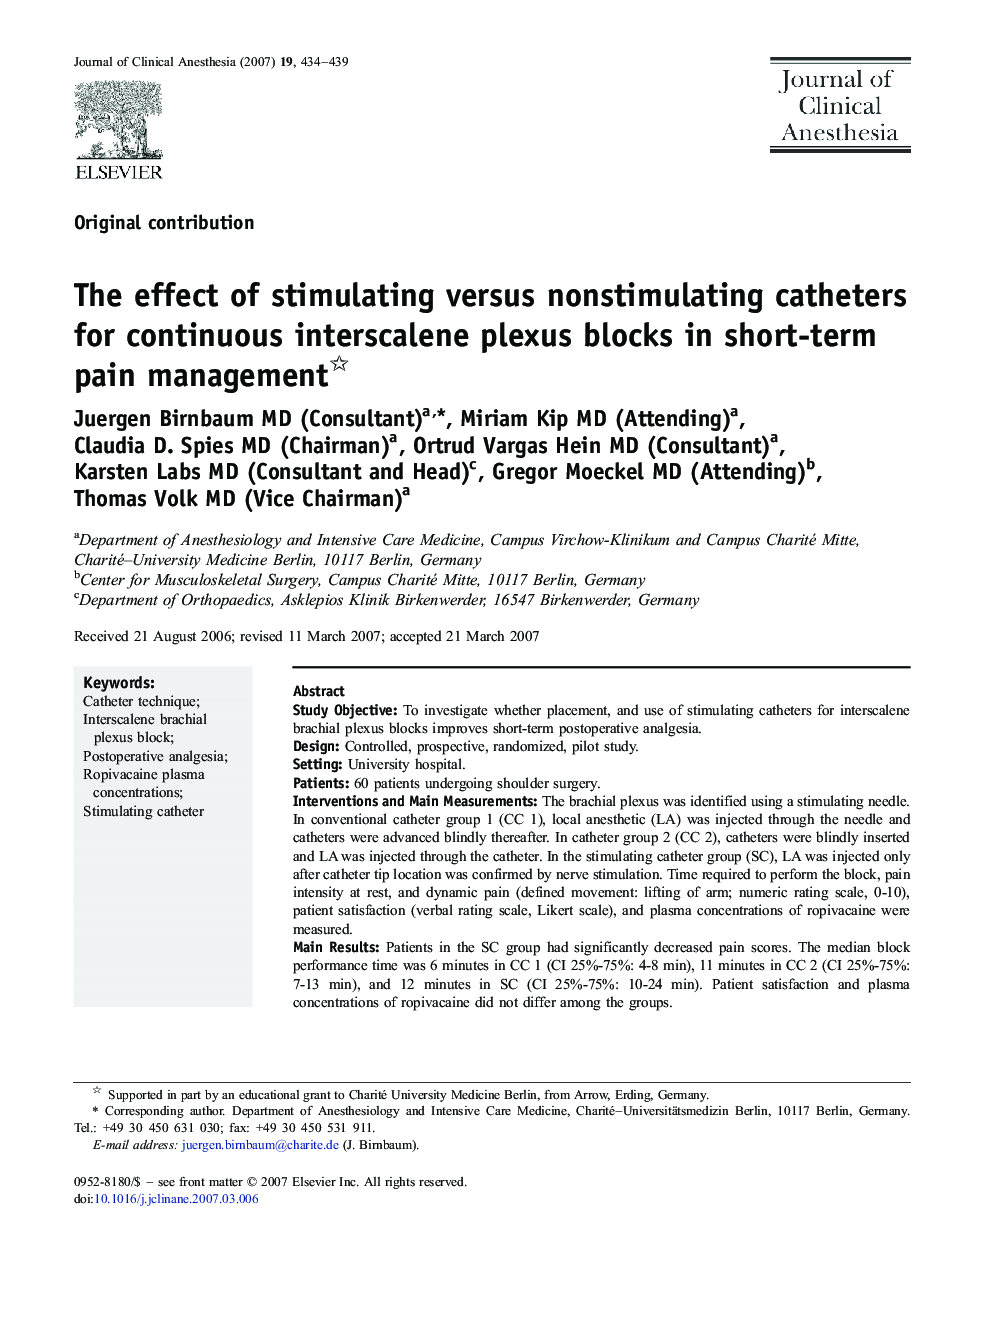 The effect of stimulating versus nonstimulating catheters for continuous interscalene plexus blocks in short-term pain management 